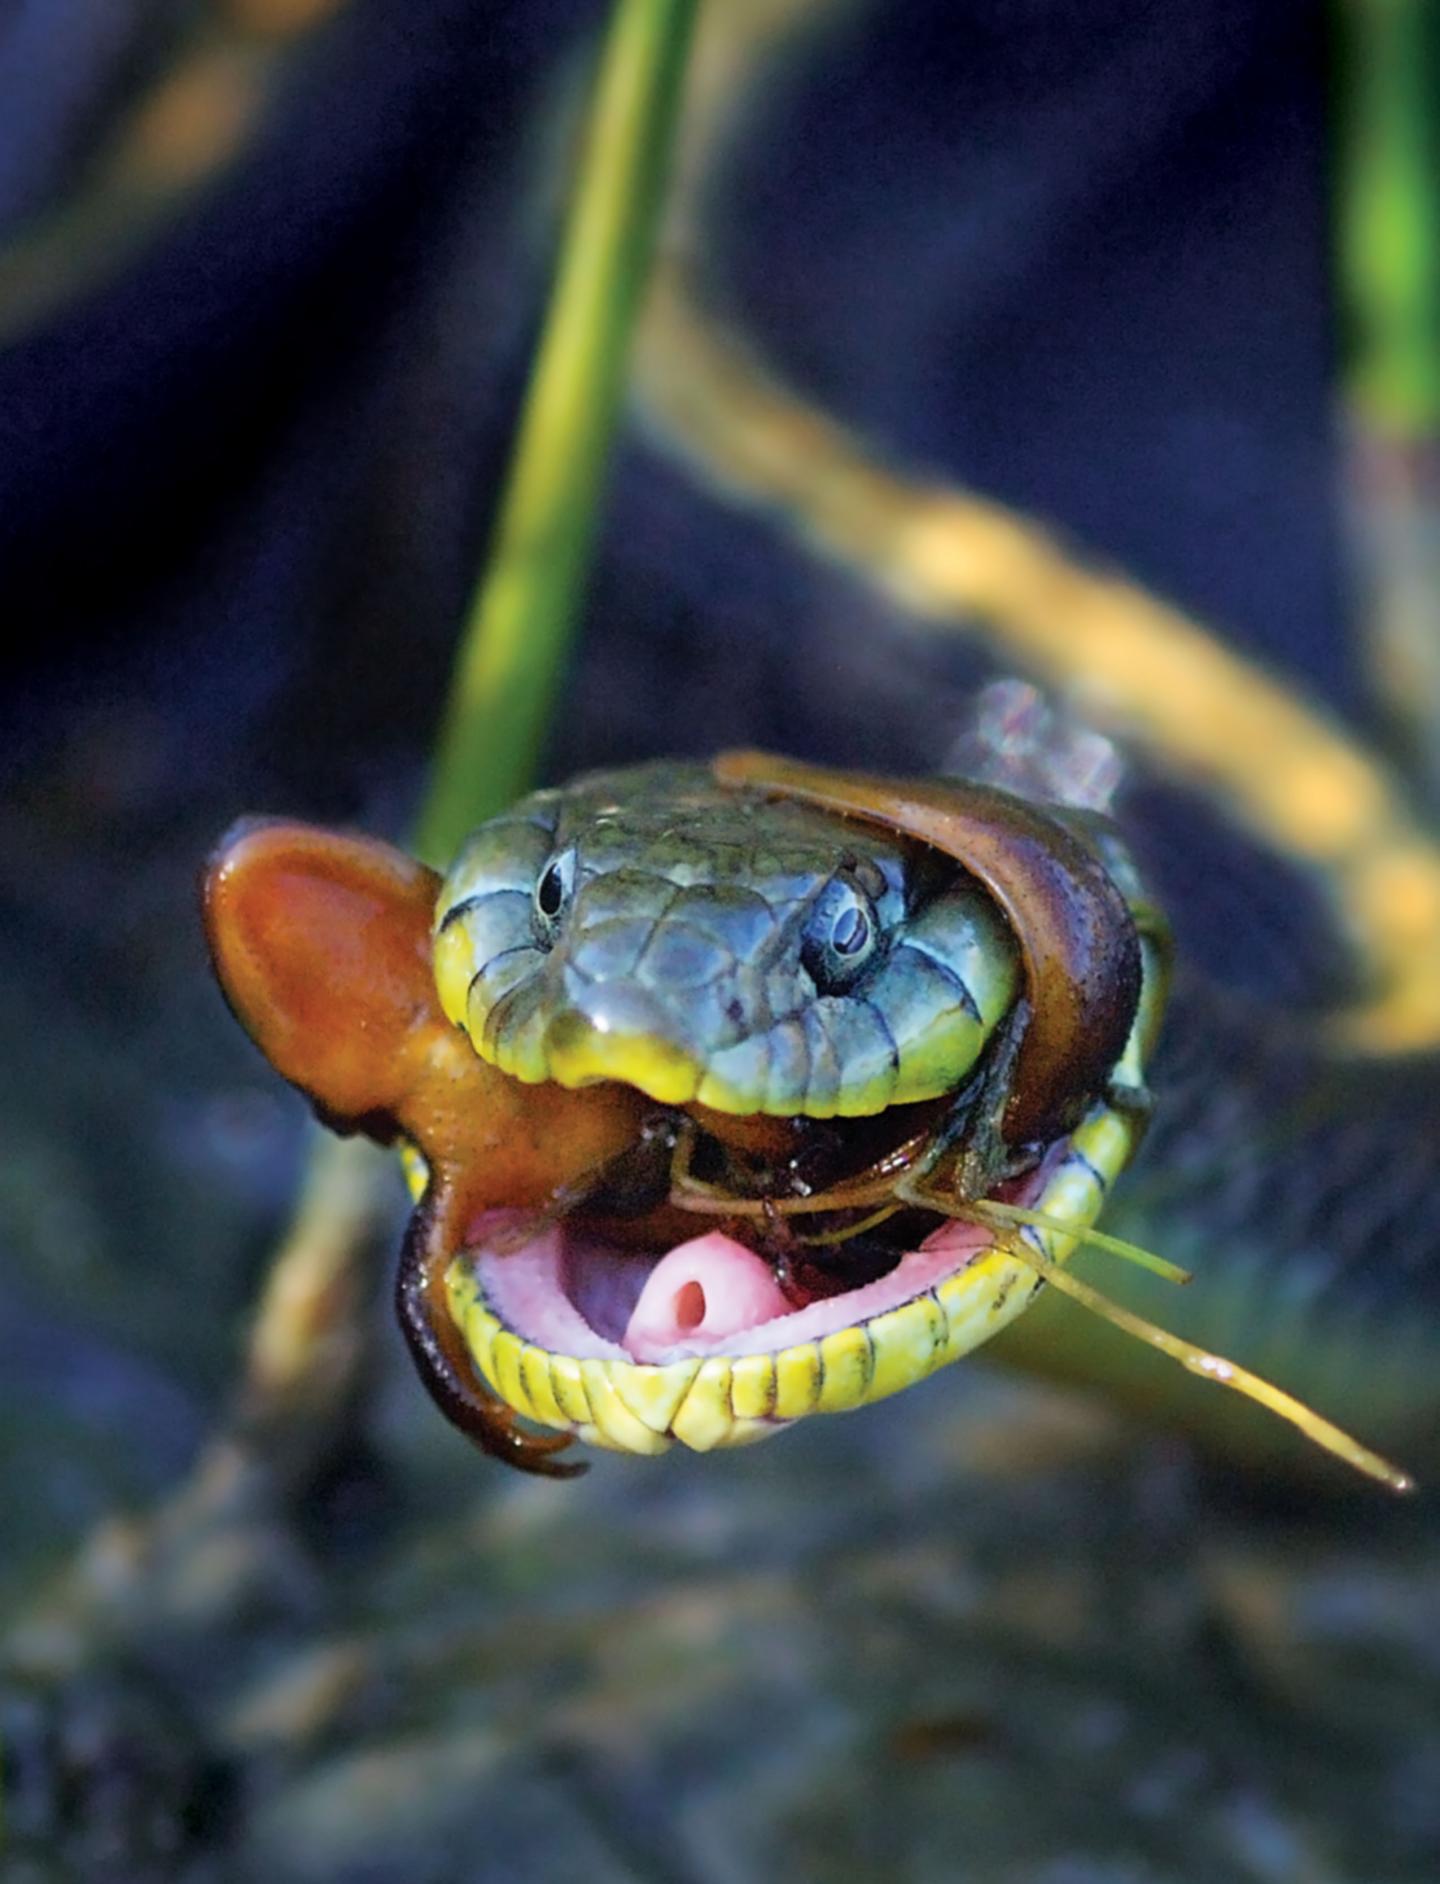 Garter Snake and Newt